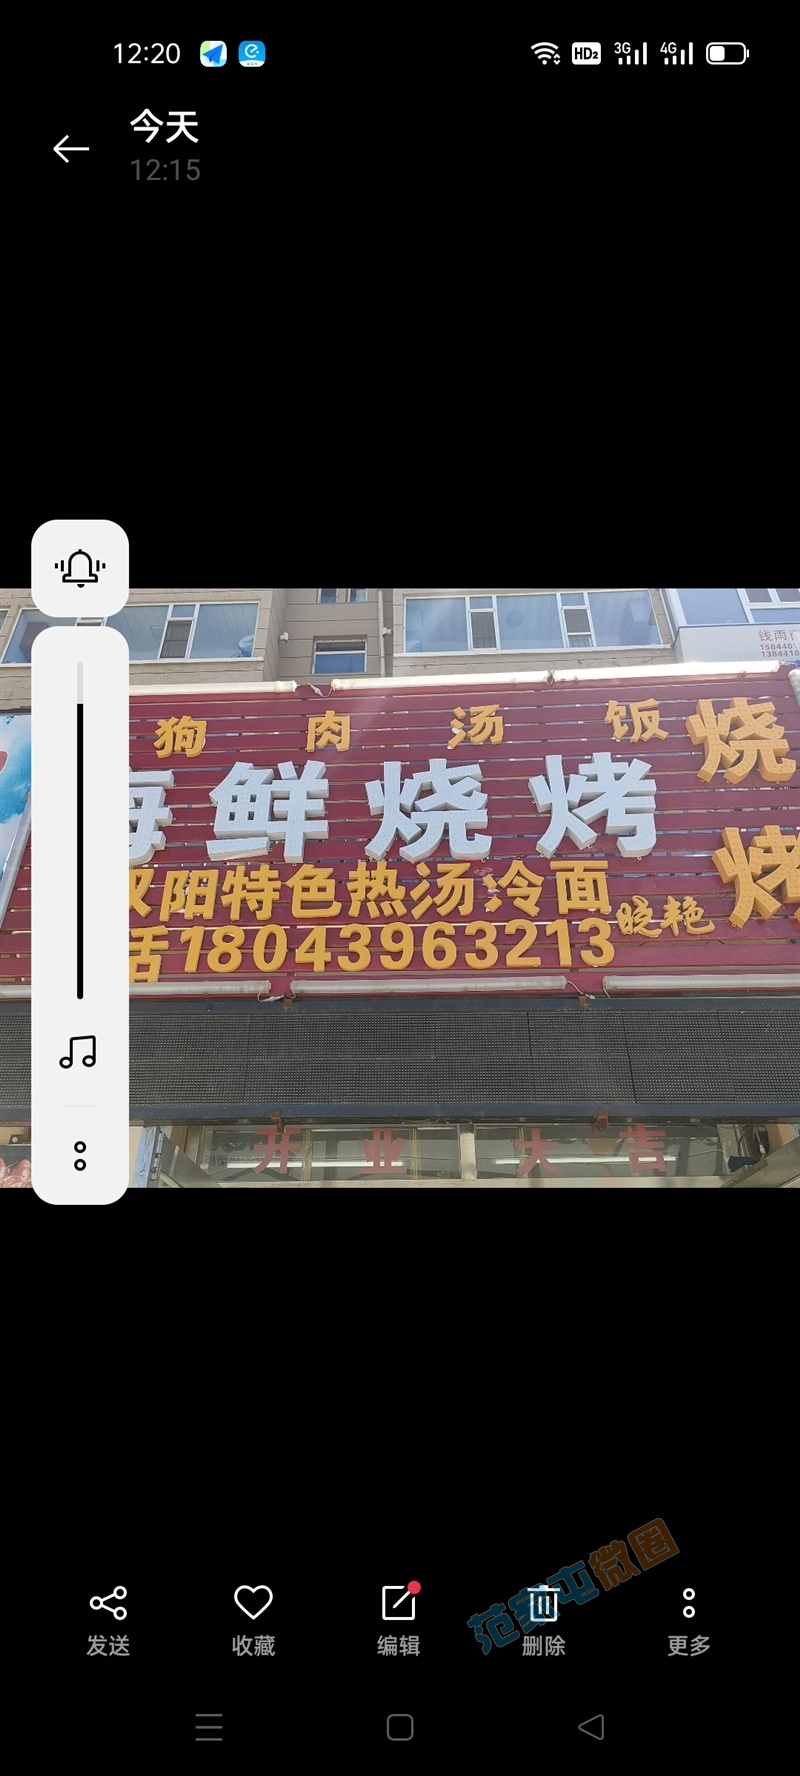 晓艳狗肉汤饭海鲜烧烤店